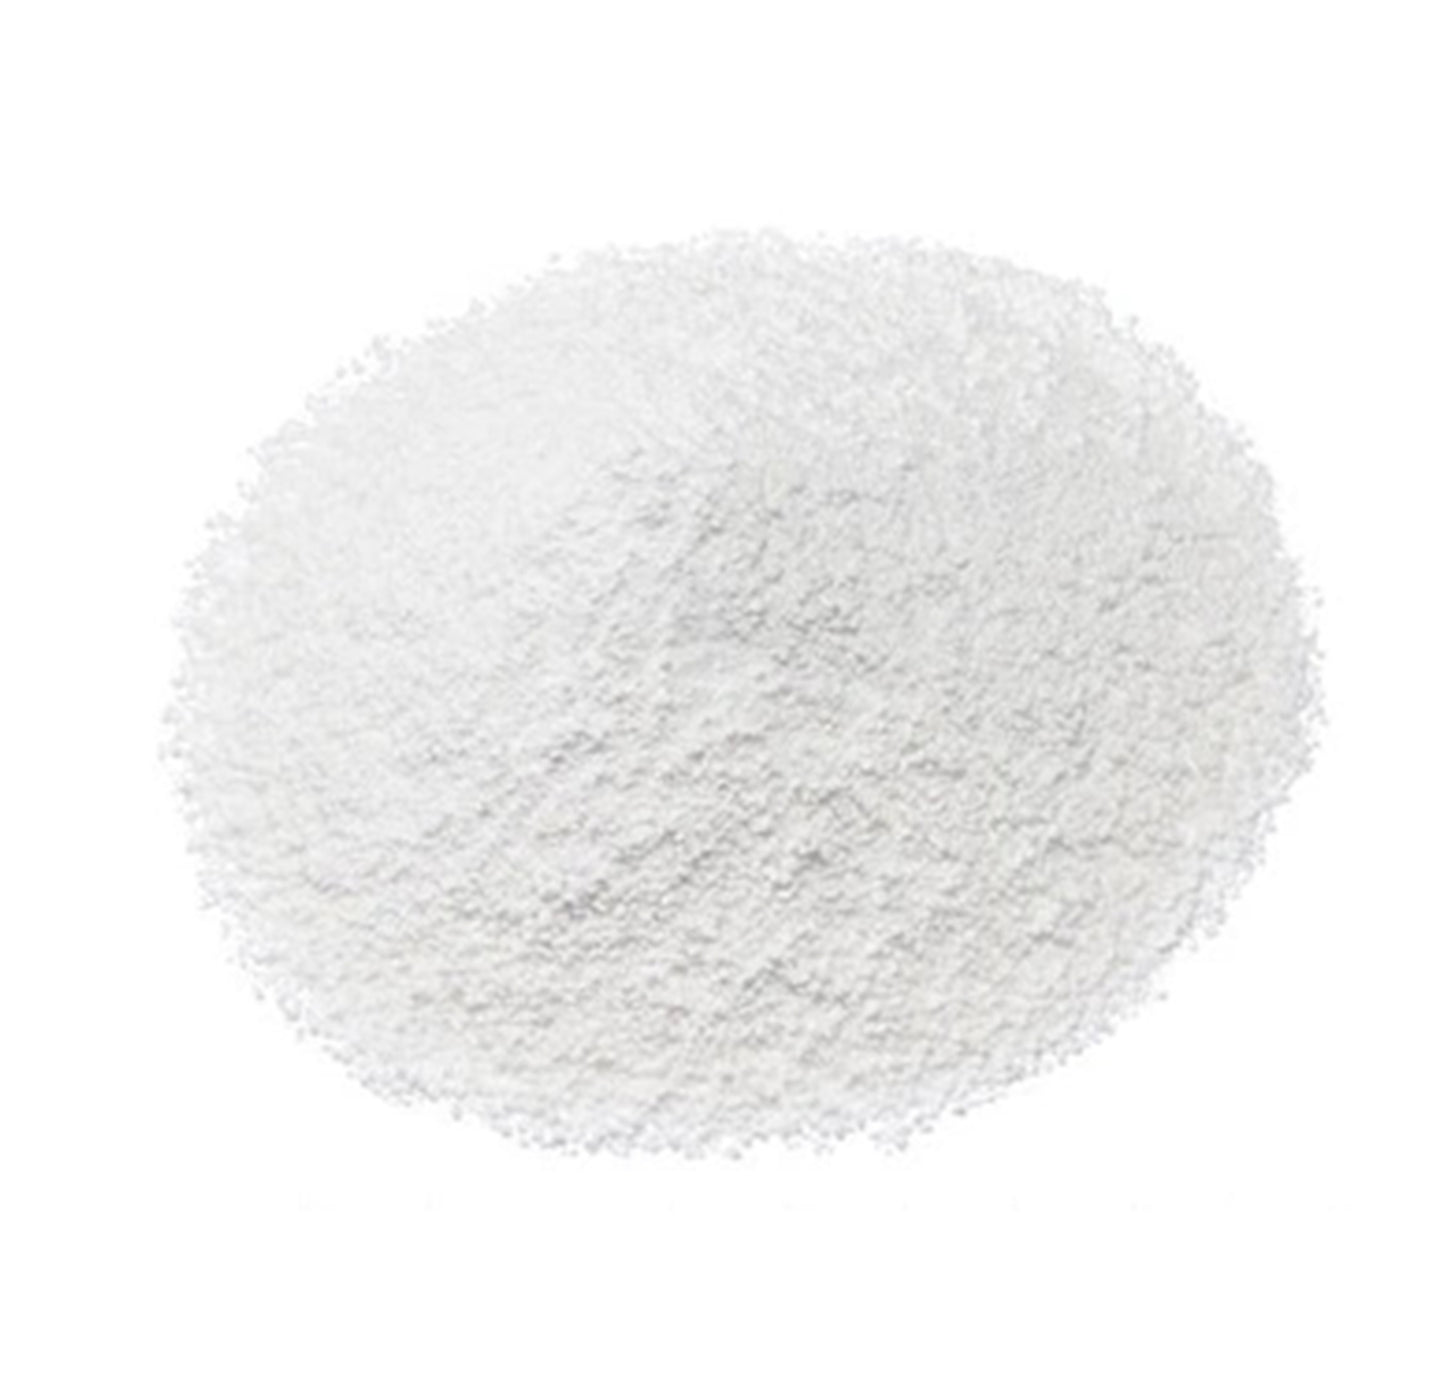 Omega-3 Fatty Acid Powder